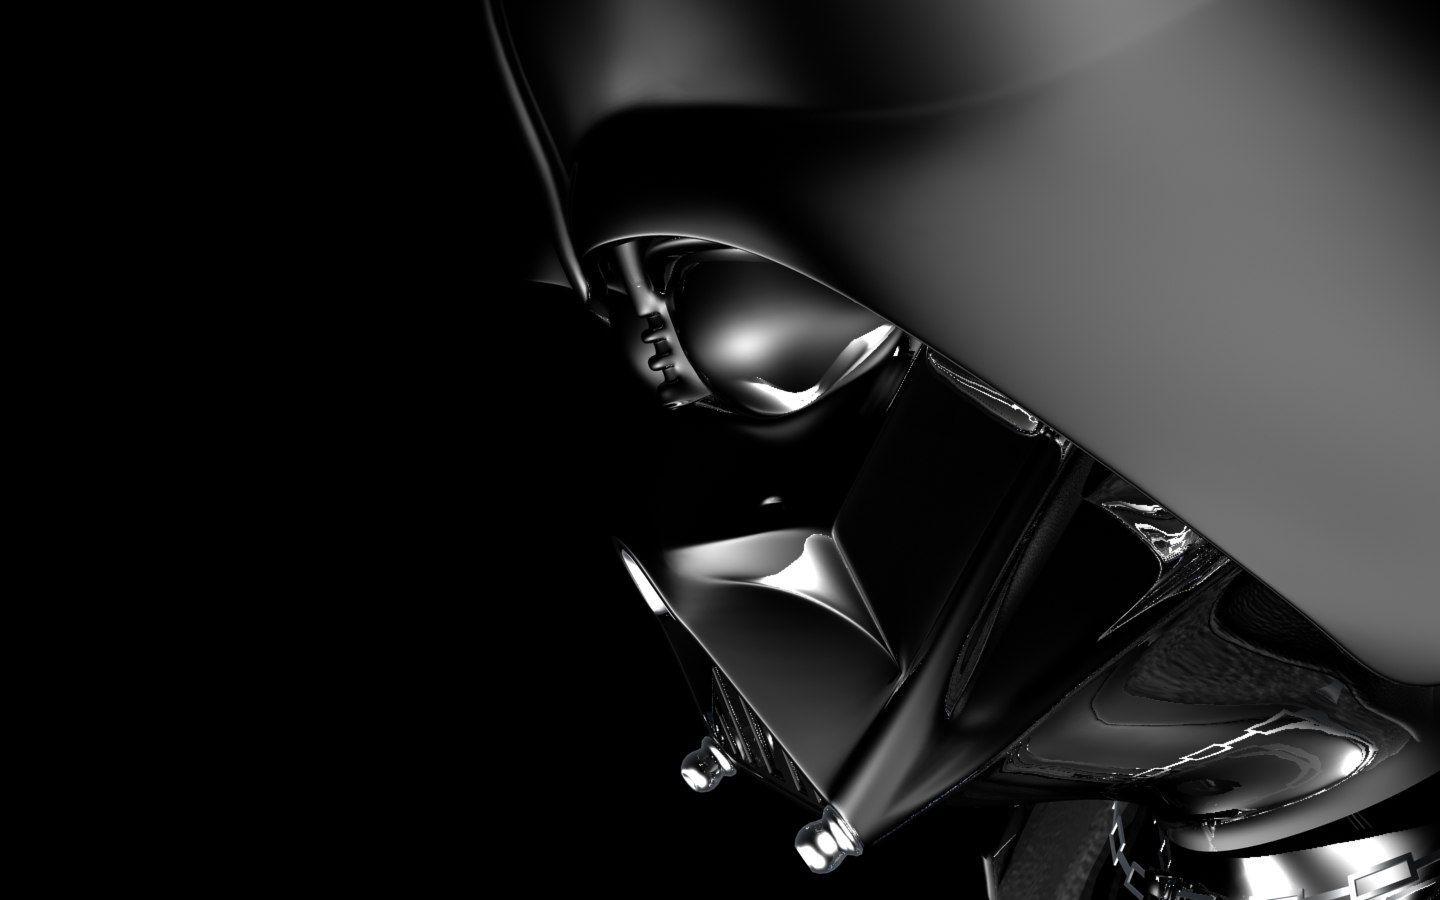 Free 'Star Wars' Darth Vader Desktop Wallpaper [Star Wars]